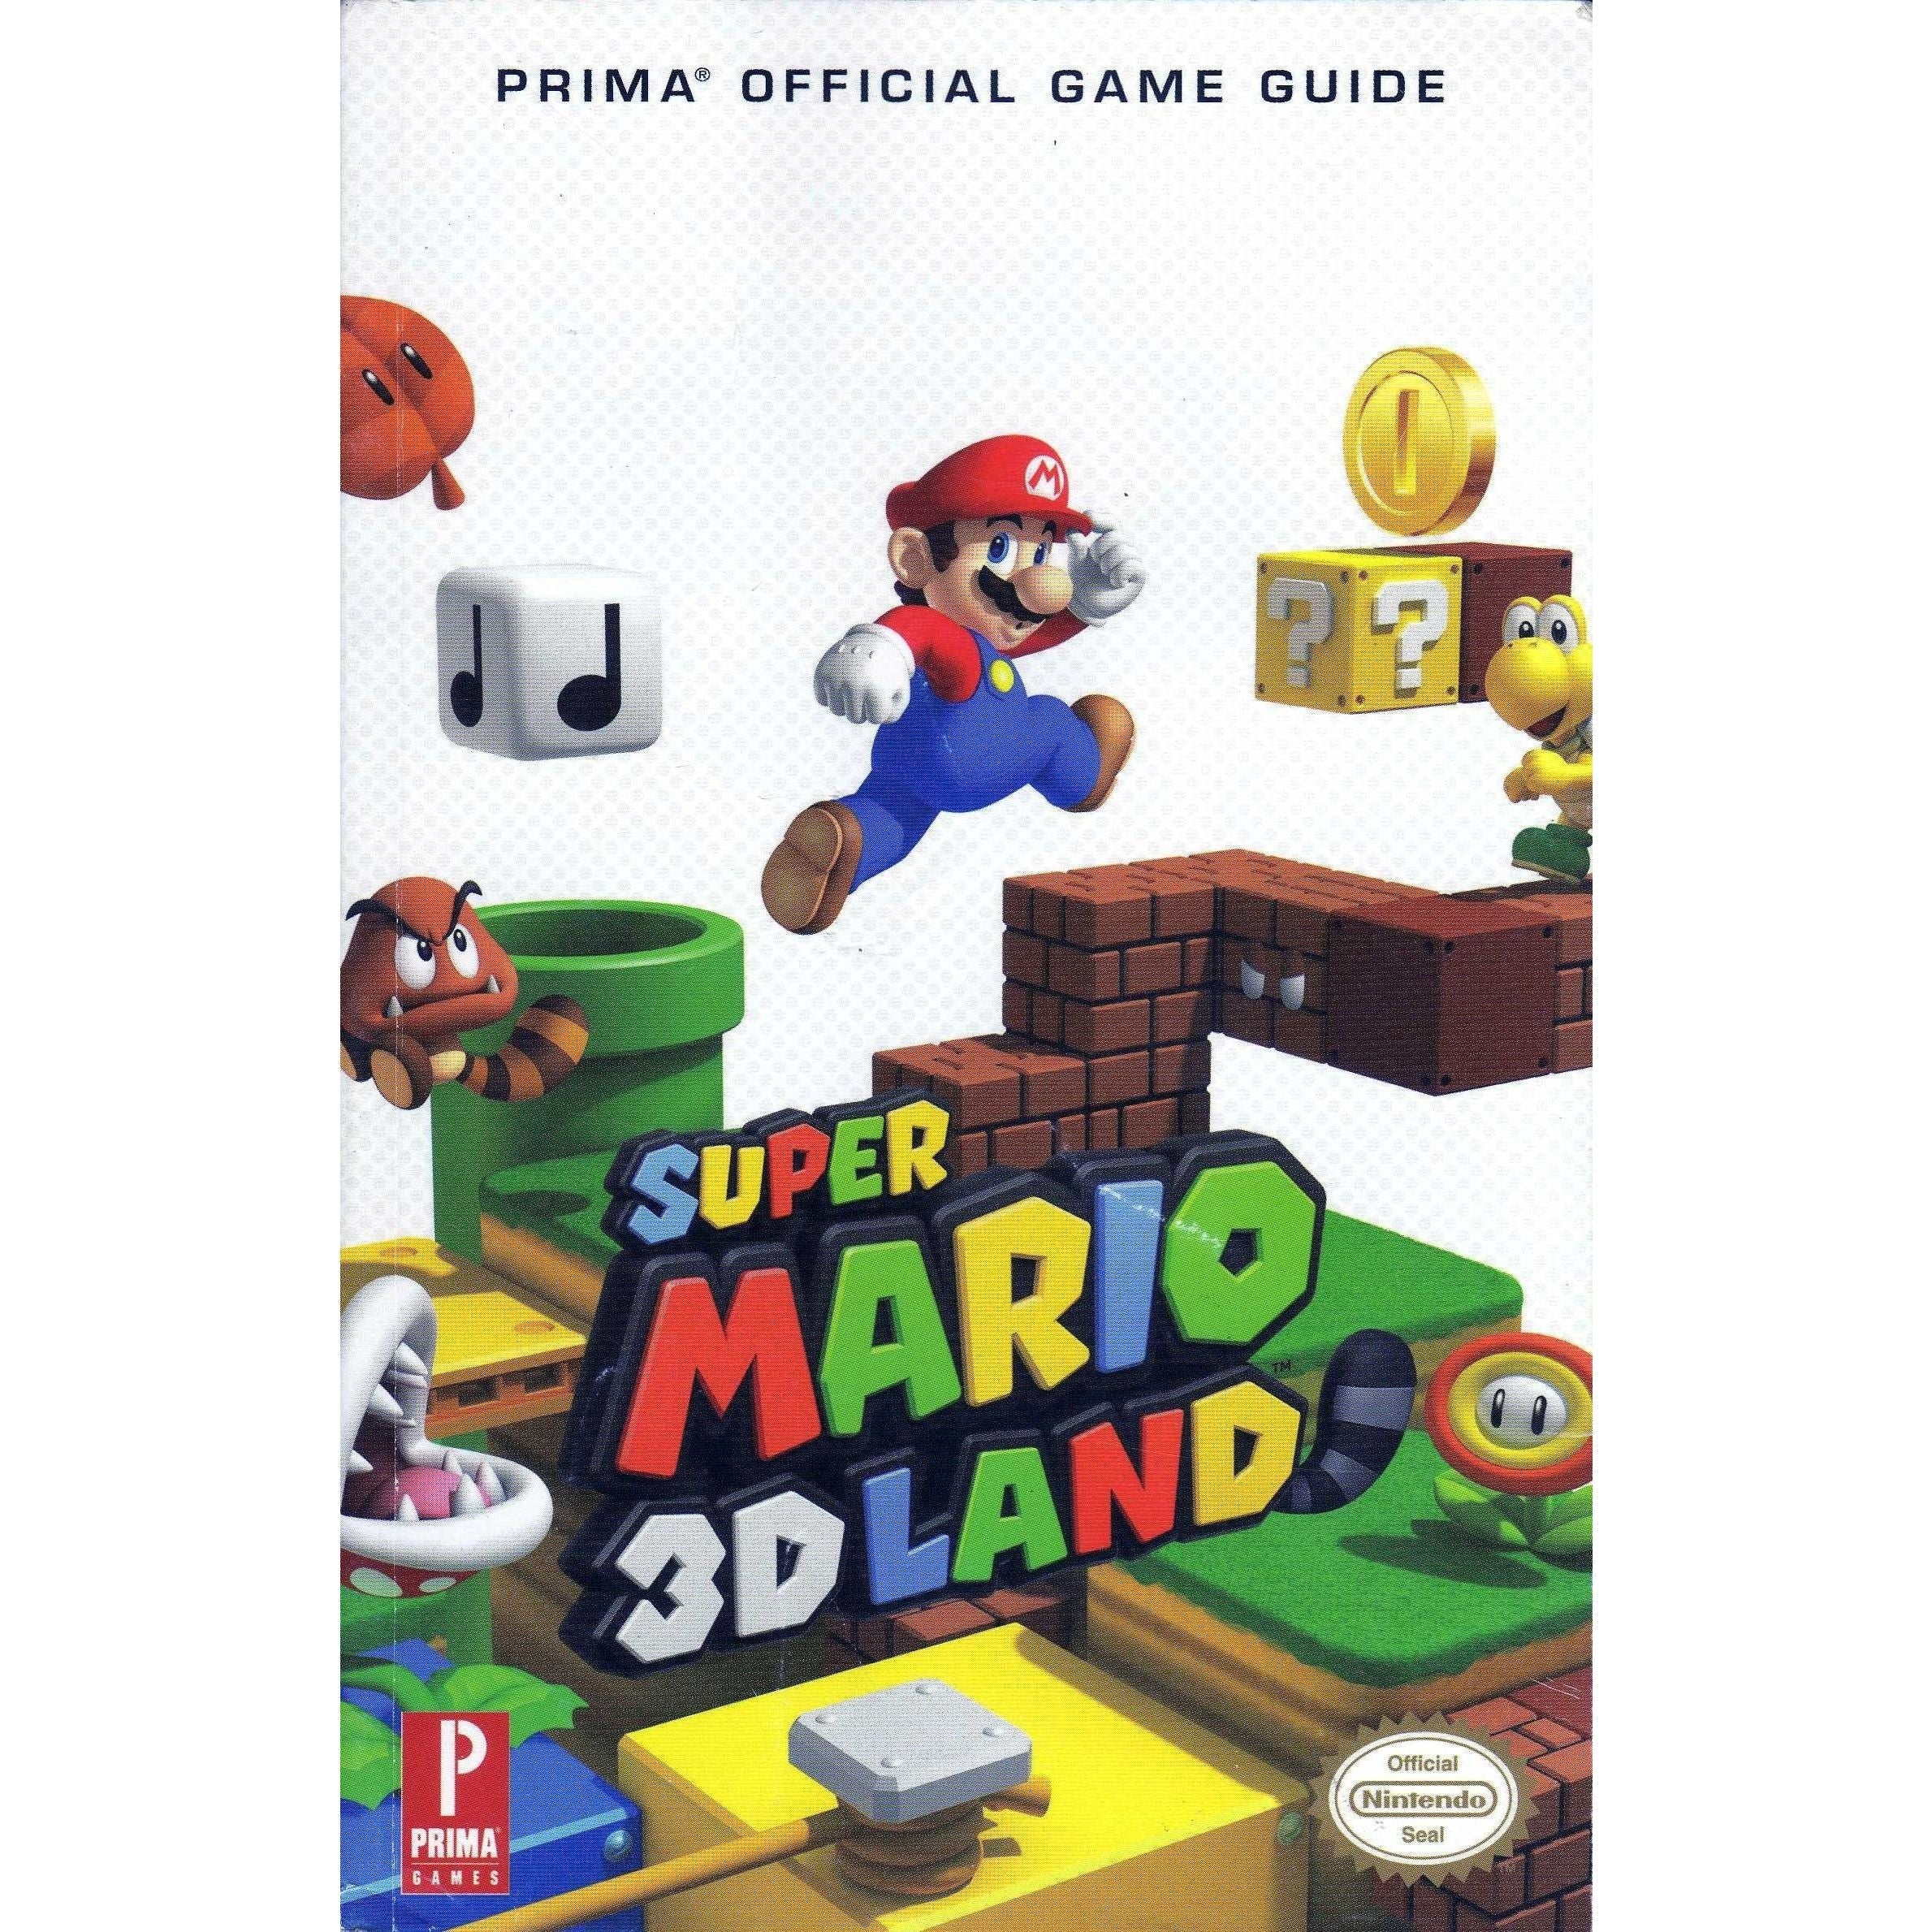 STRAT - Super Mario 3D Land (Prima)